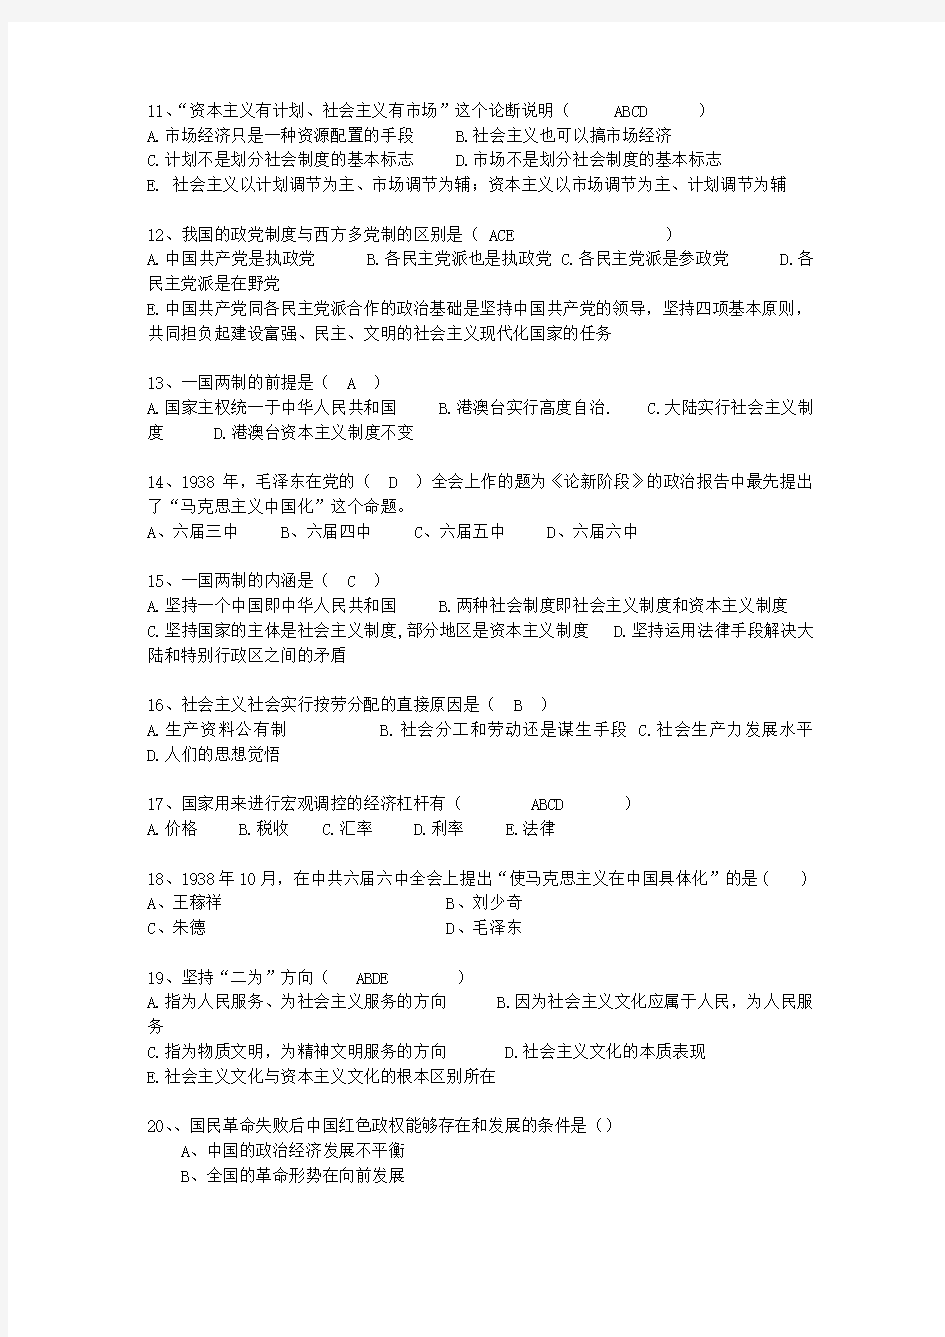 2012台湾省毛概复习提纲答案整理版考试技巧、答题原则